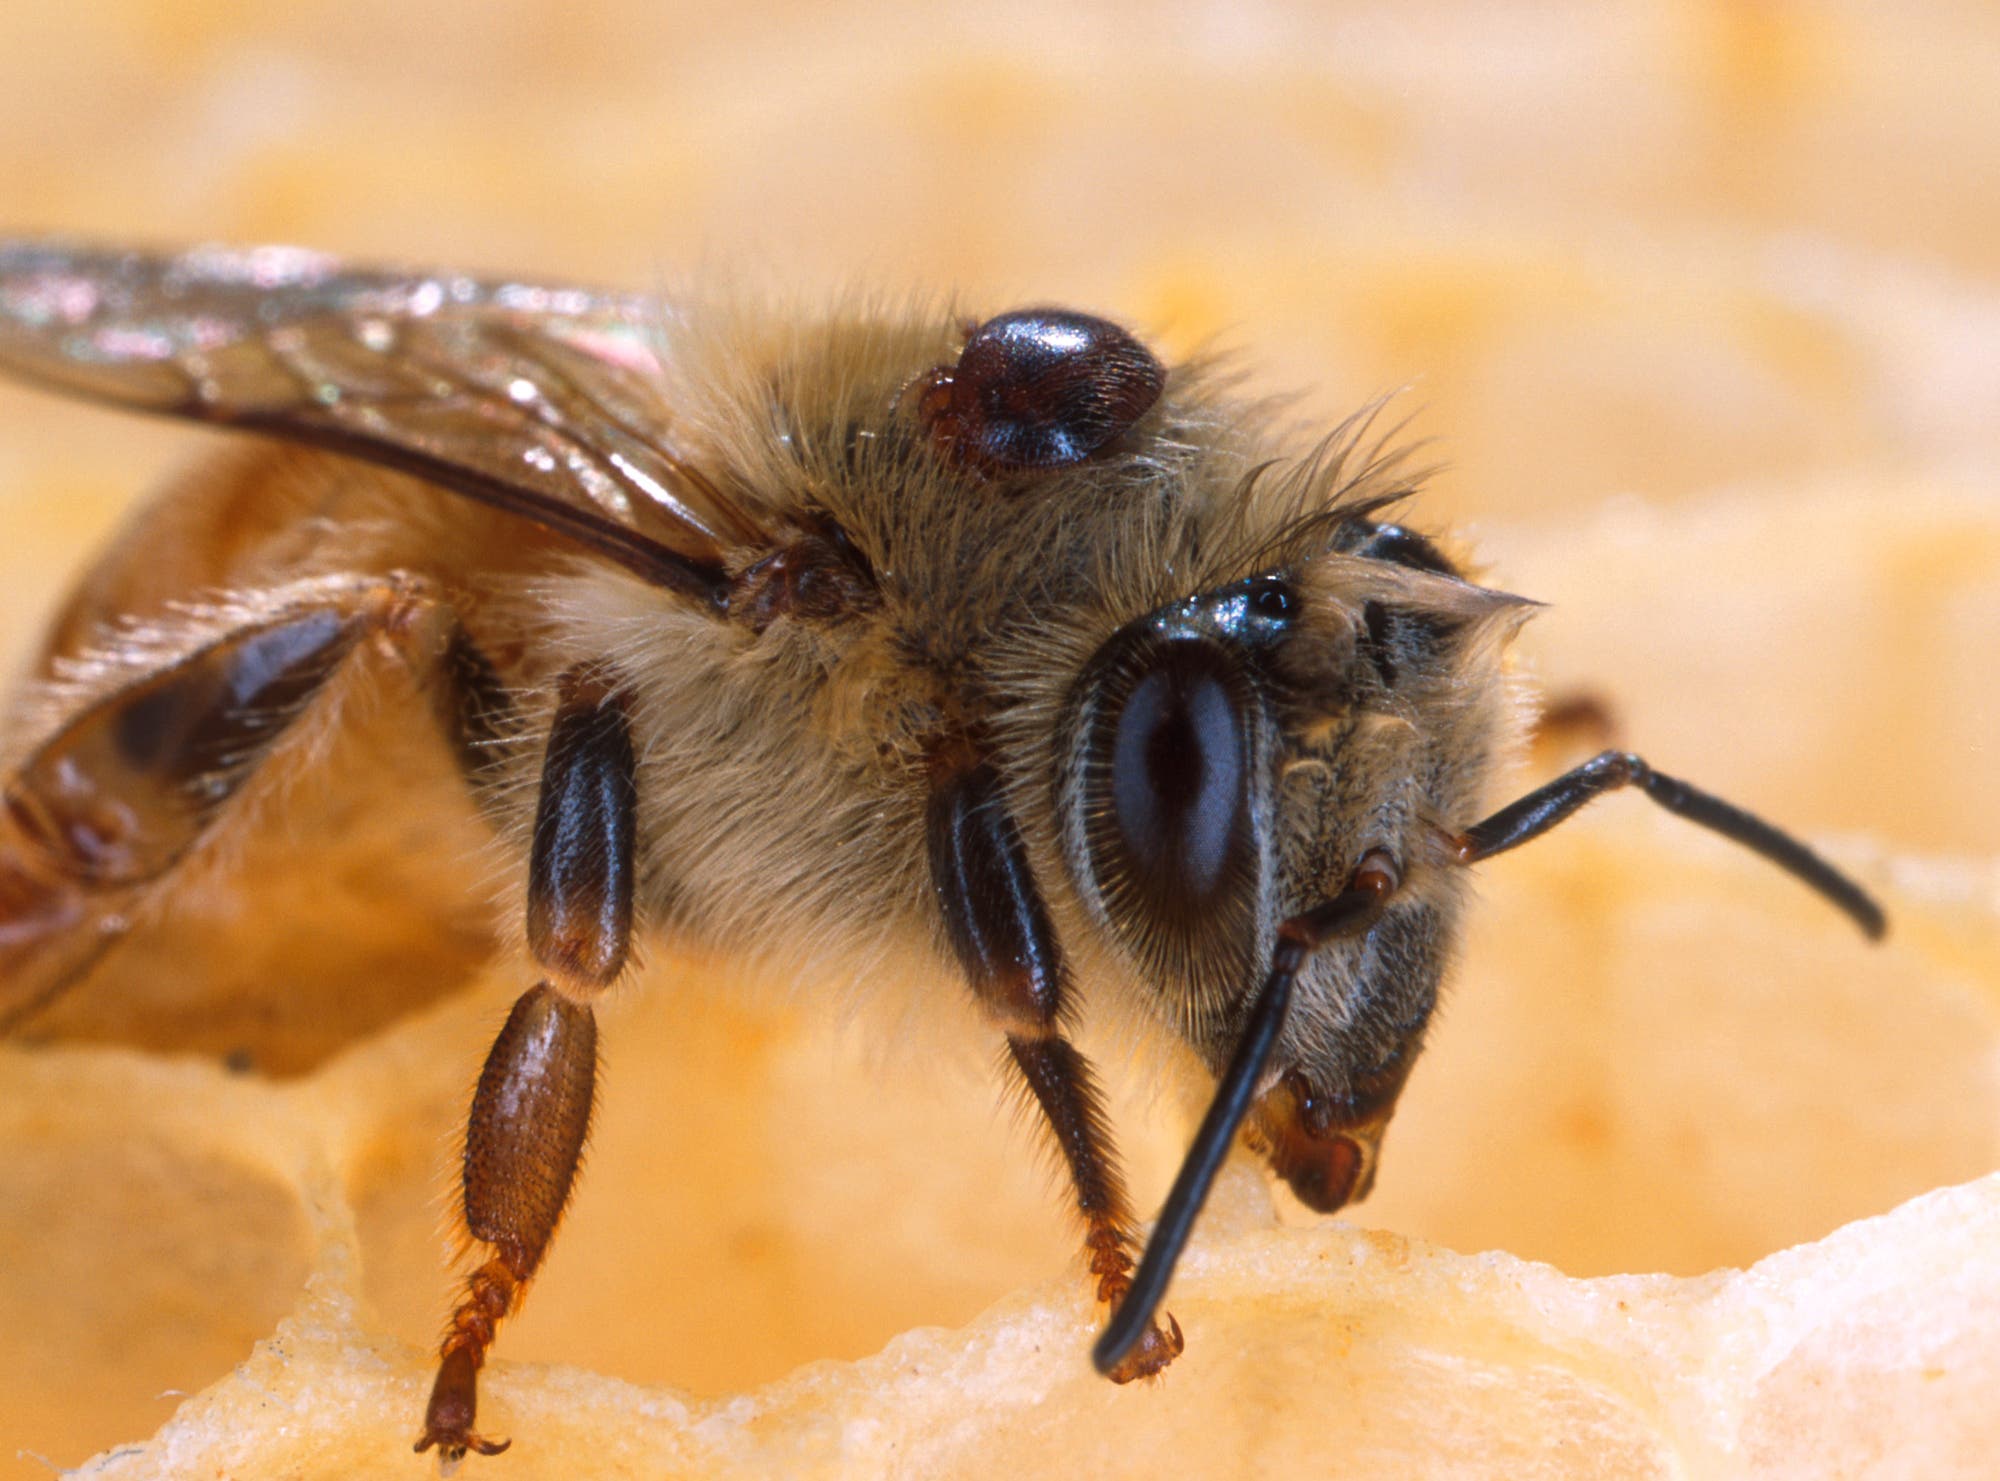 Biene mit Varroa-Milbe